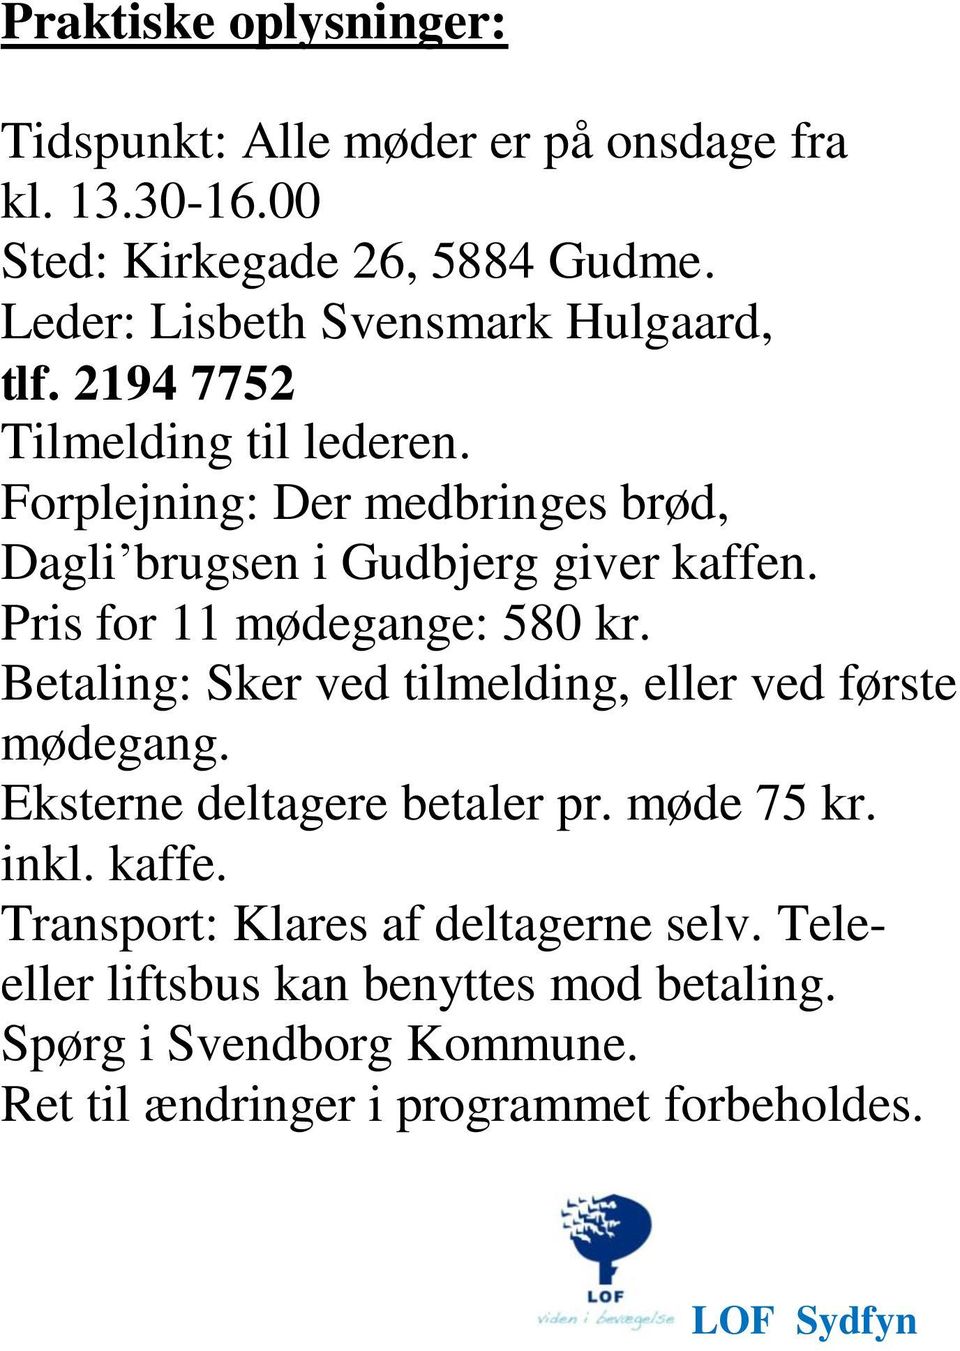 Forplejning: Der medbringes brød, Dagli brugsen i Gudbjerg giver kaffen. Pris for 11 mødegange: 580 kr.